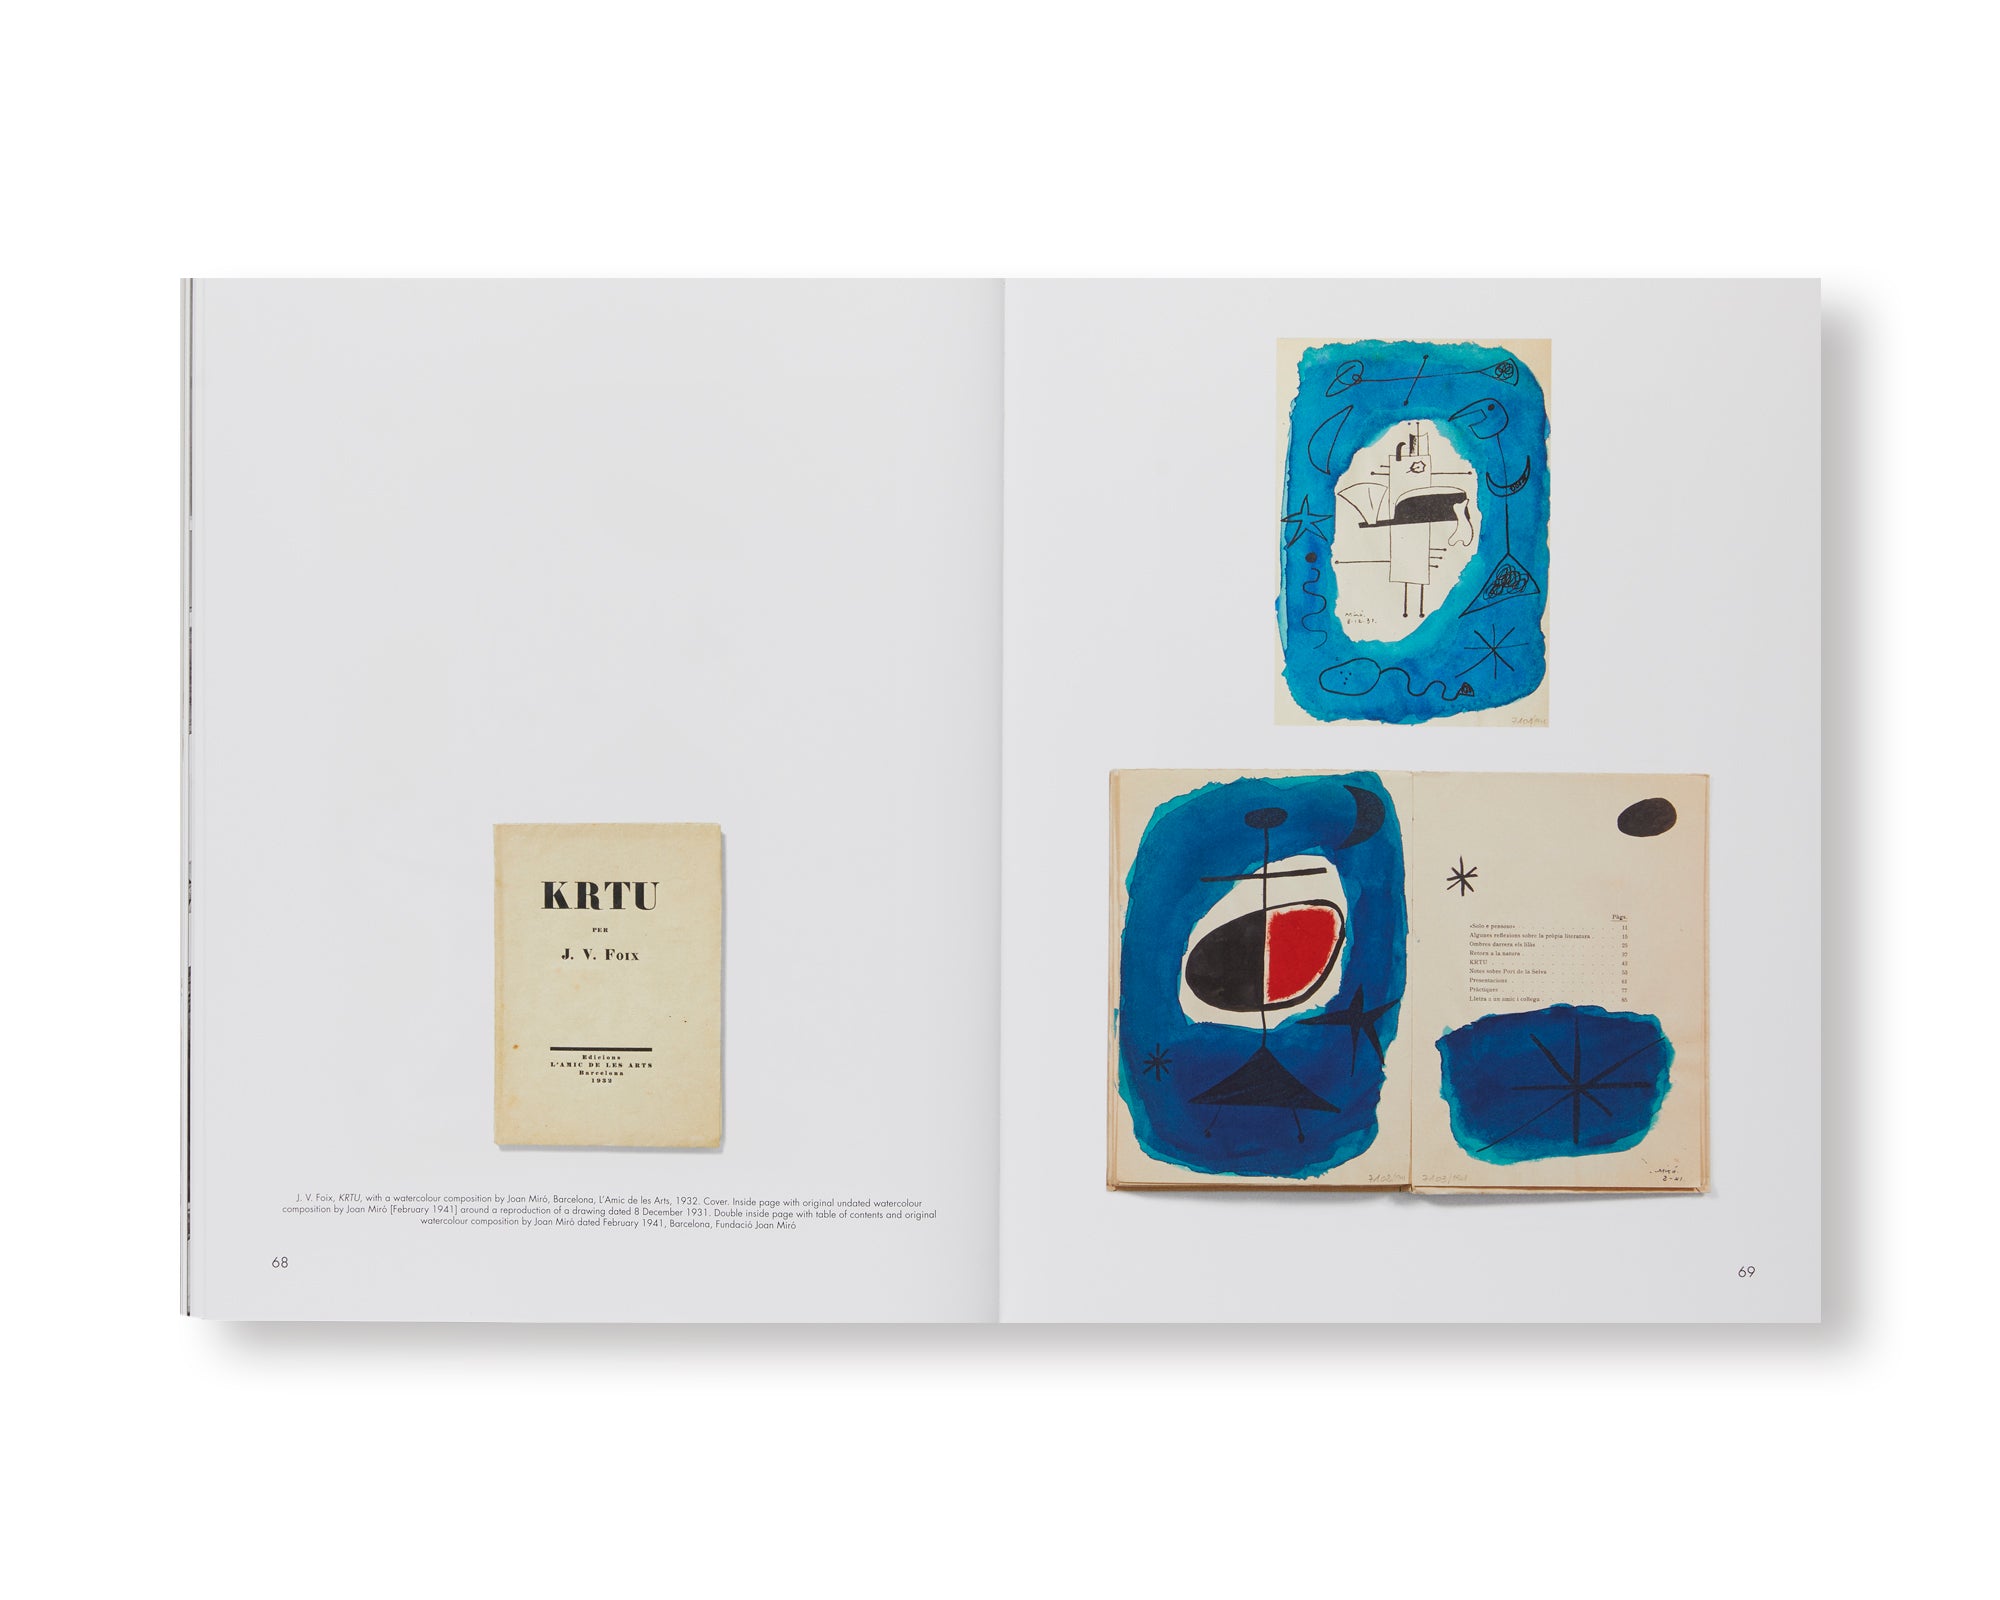 REVUE CAHIERS D’ART, 2018, MIRÓ by Joan Miró